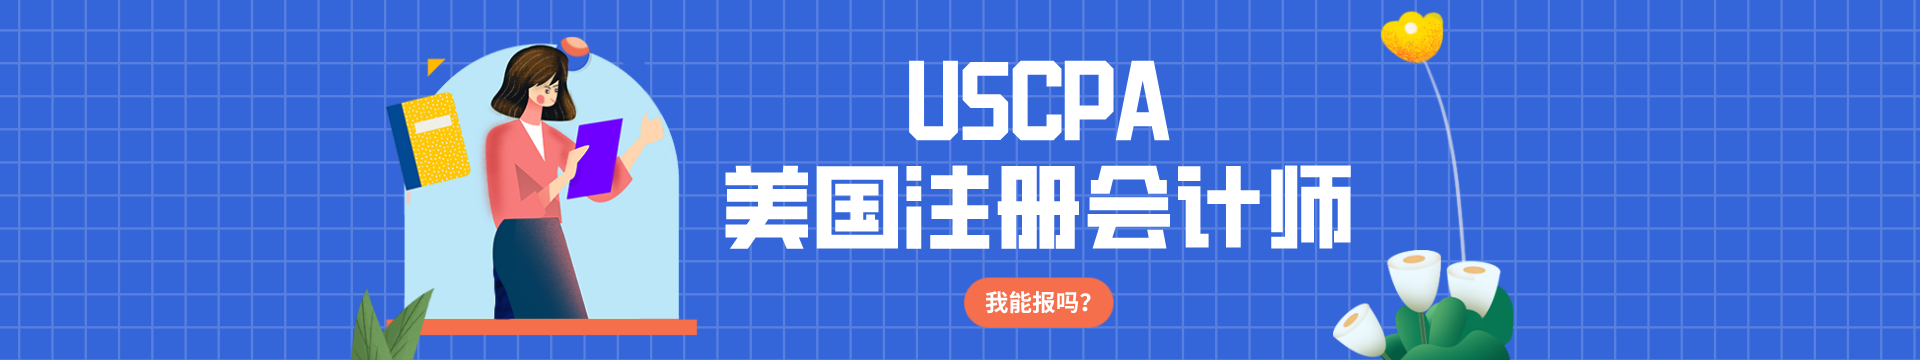 USCPA预评估